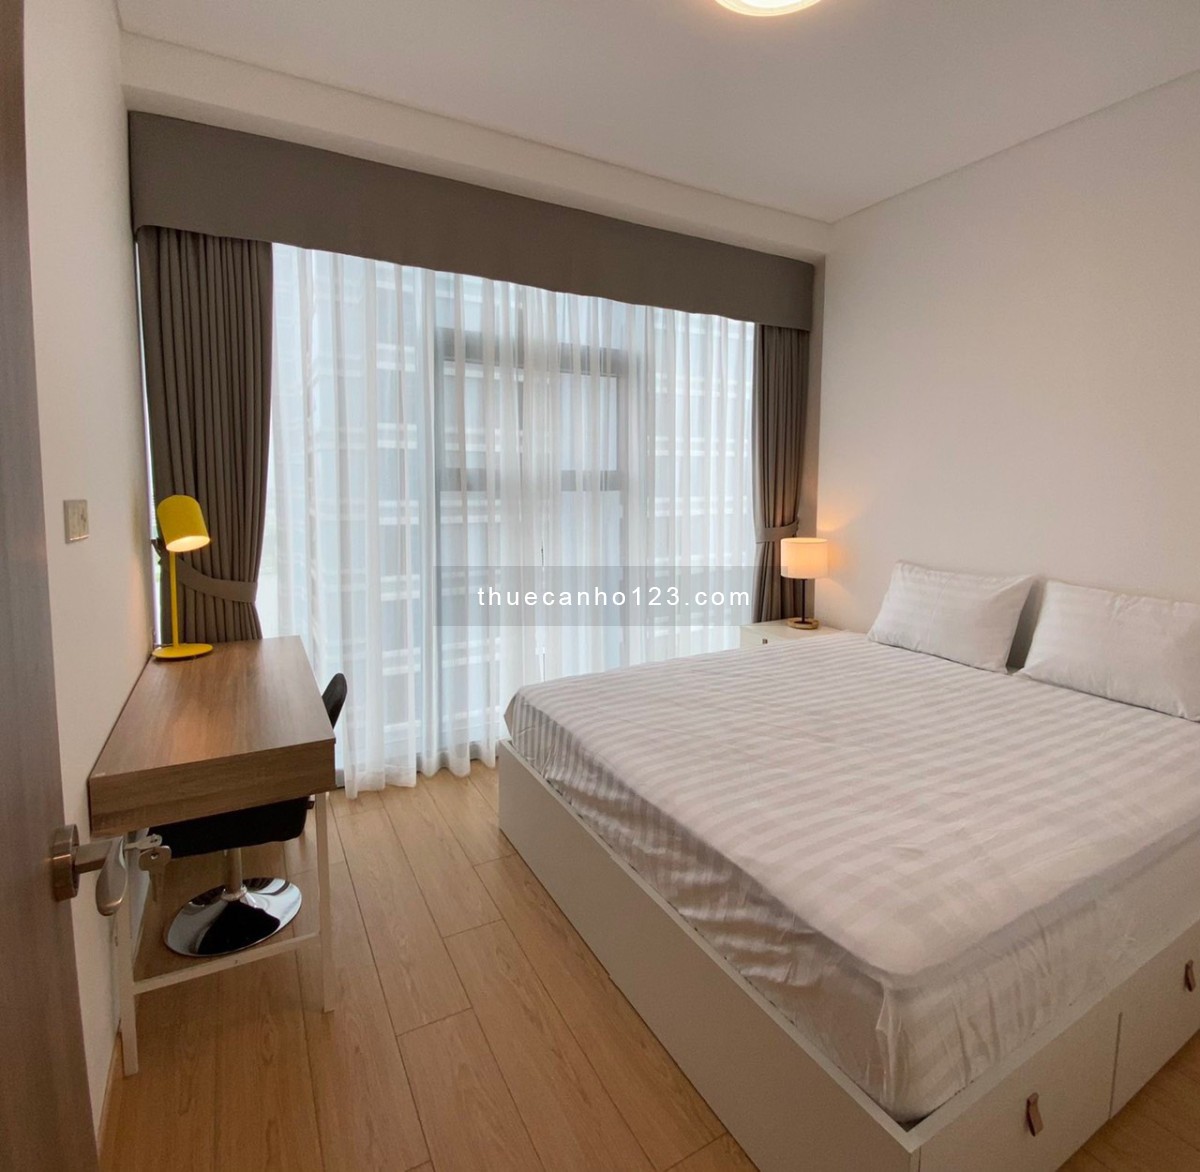 Cho thuê căn hộ 1 phòng ngủ Sunwah Pearl Bình Thạnh giá tốt nhất. Liên hệ： 0909806586